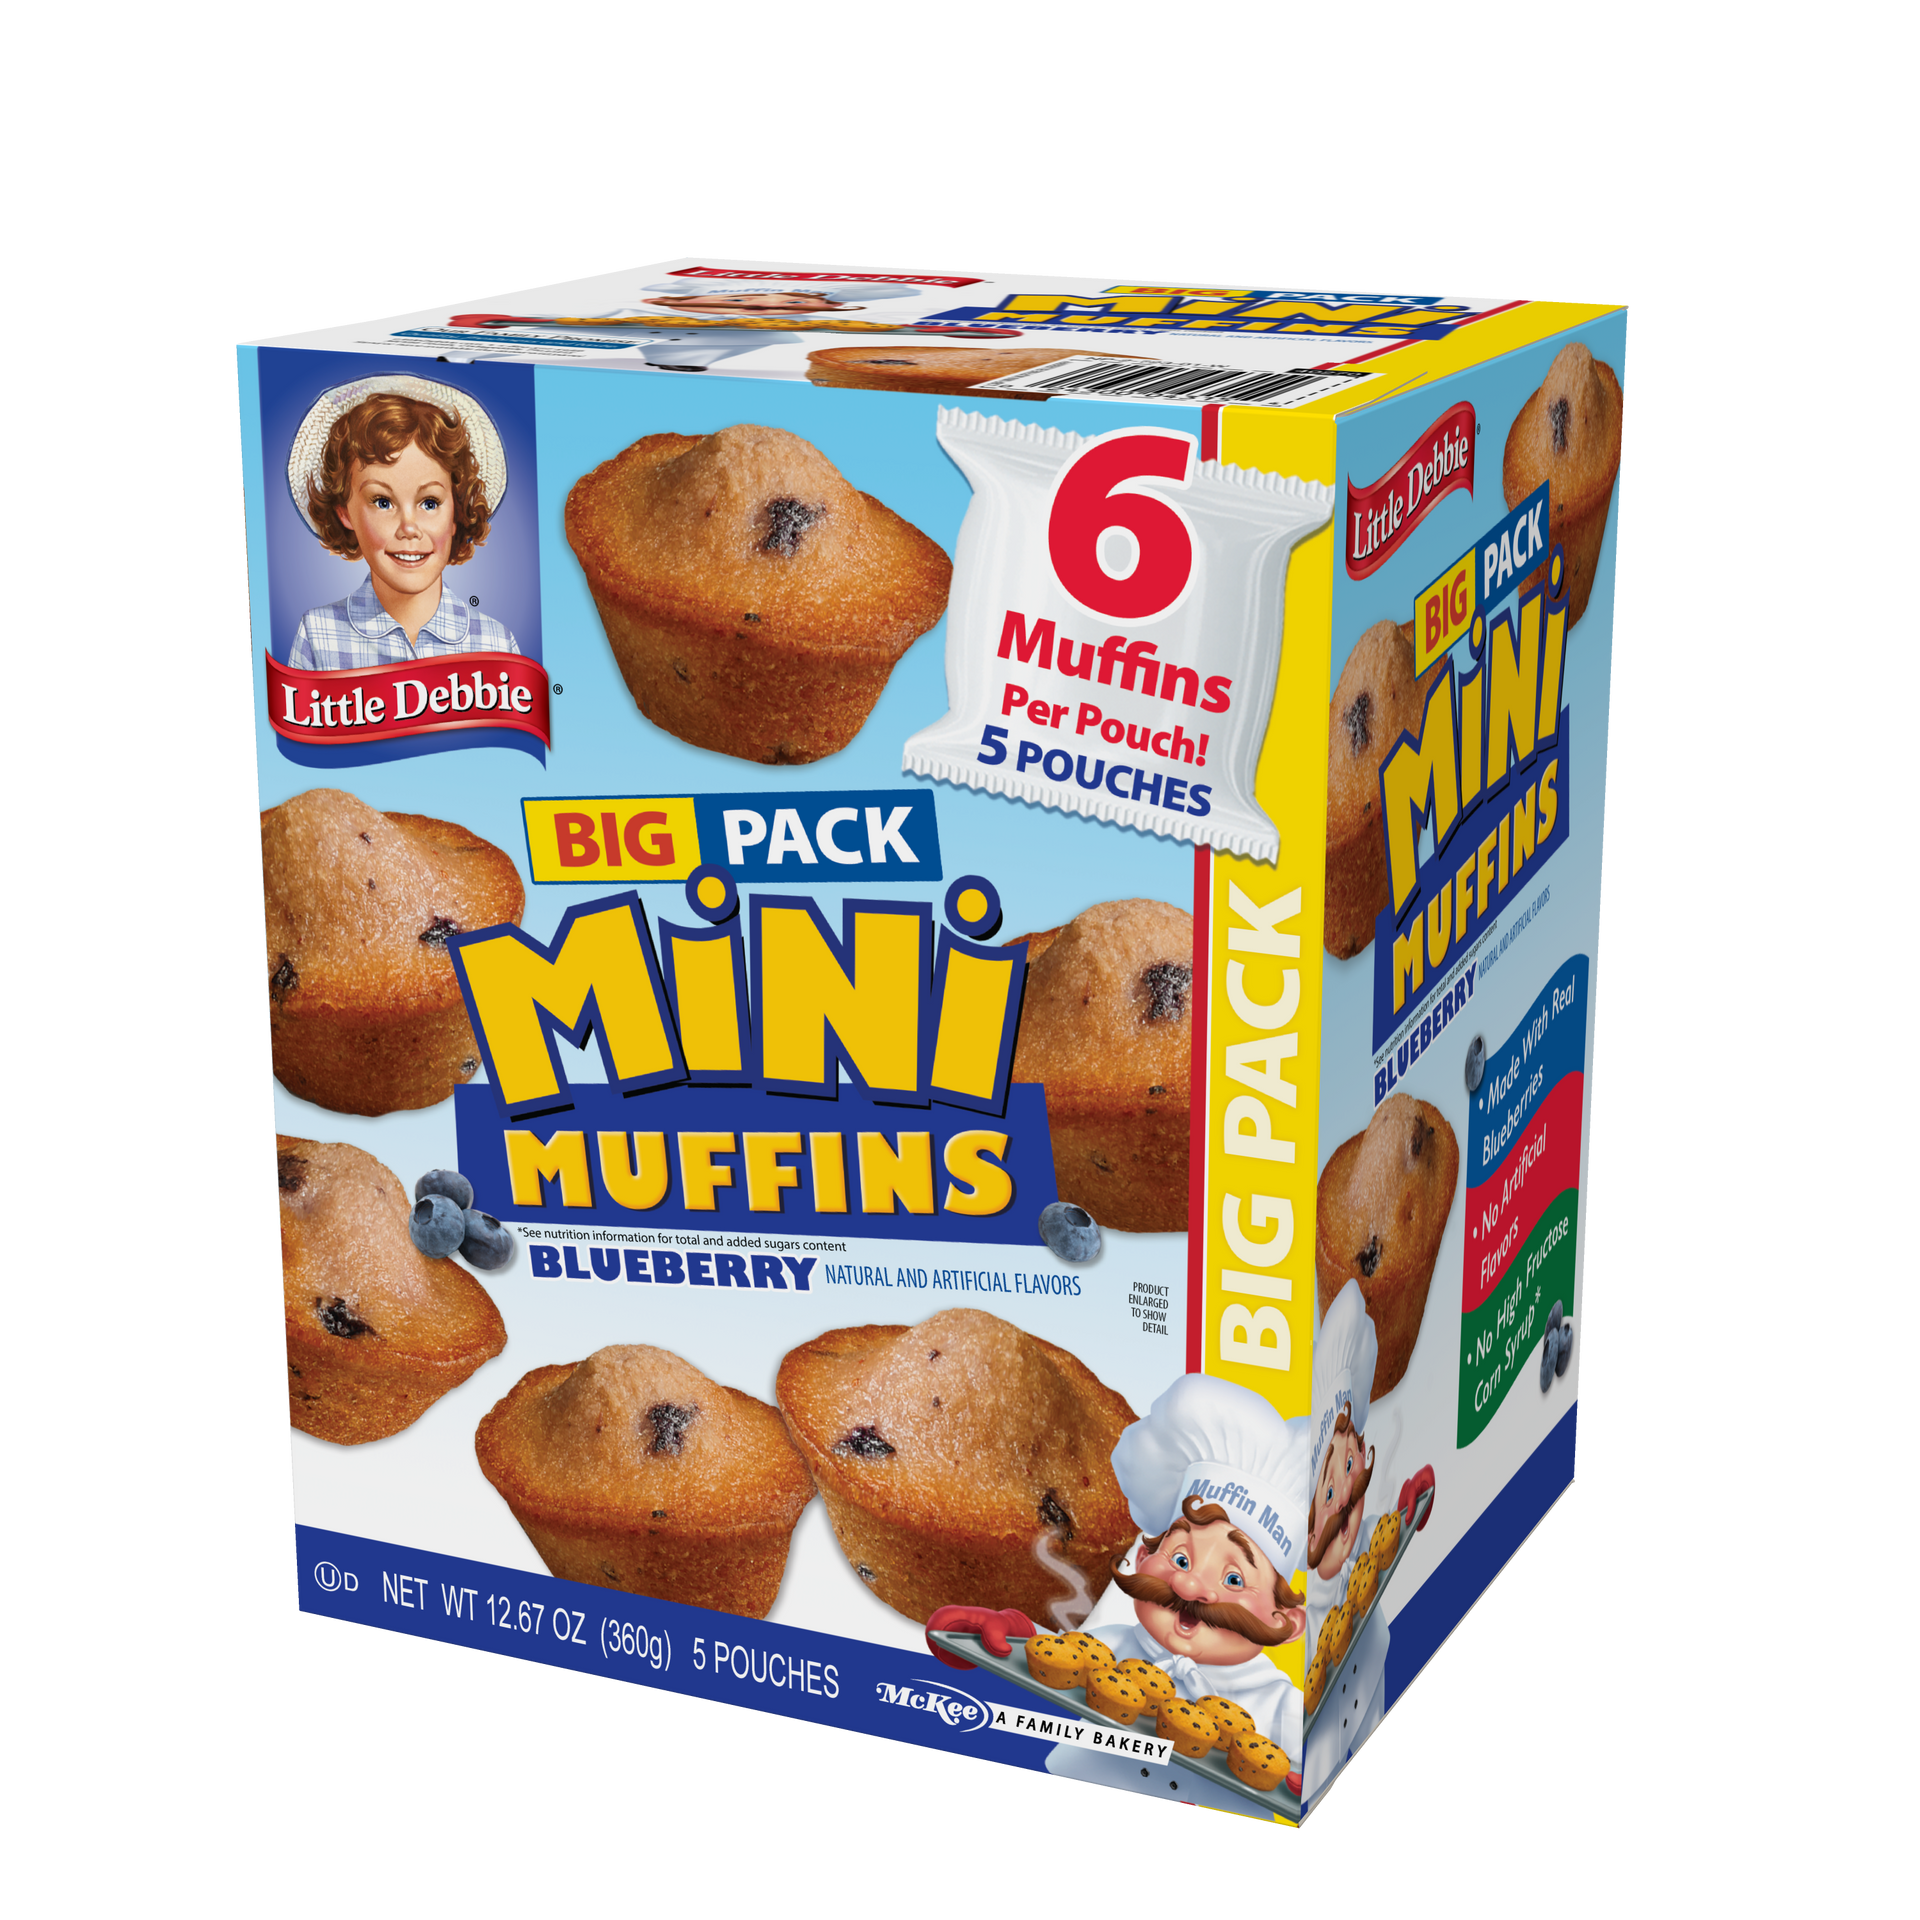 A box of little debbie big pack mini muffins